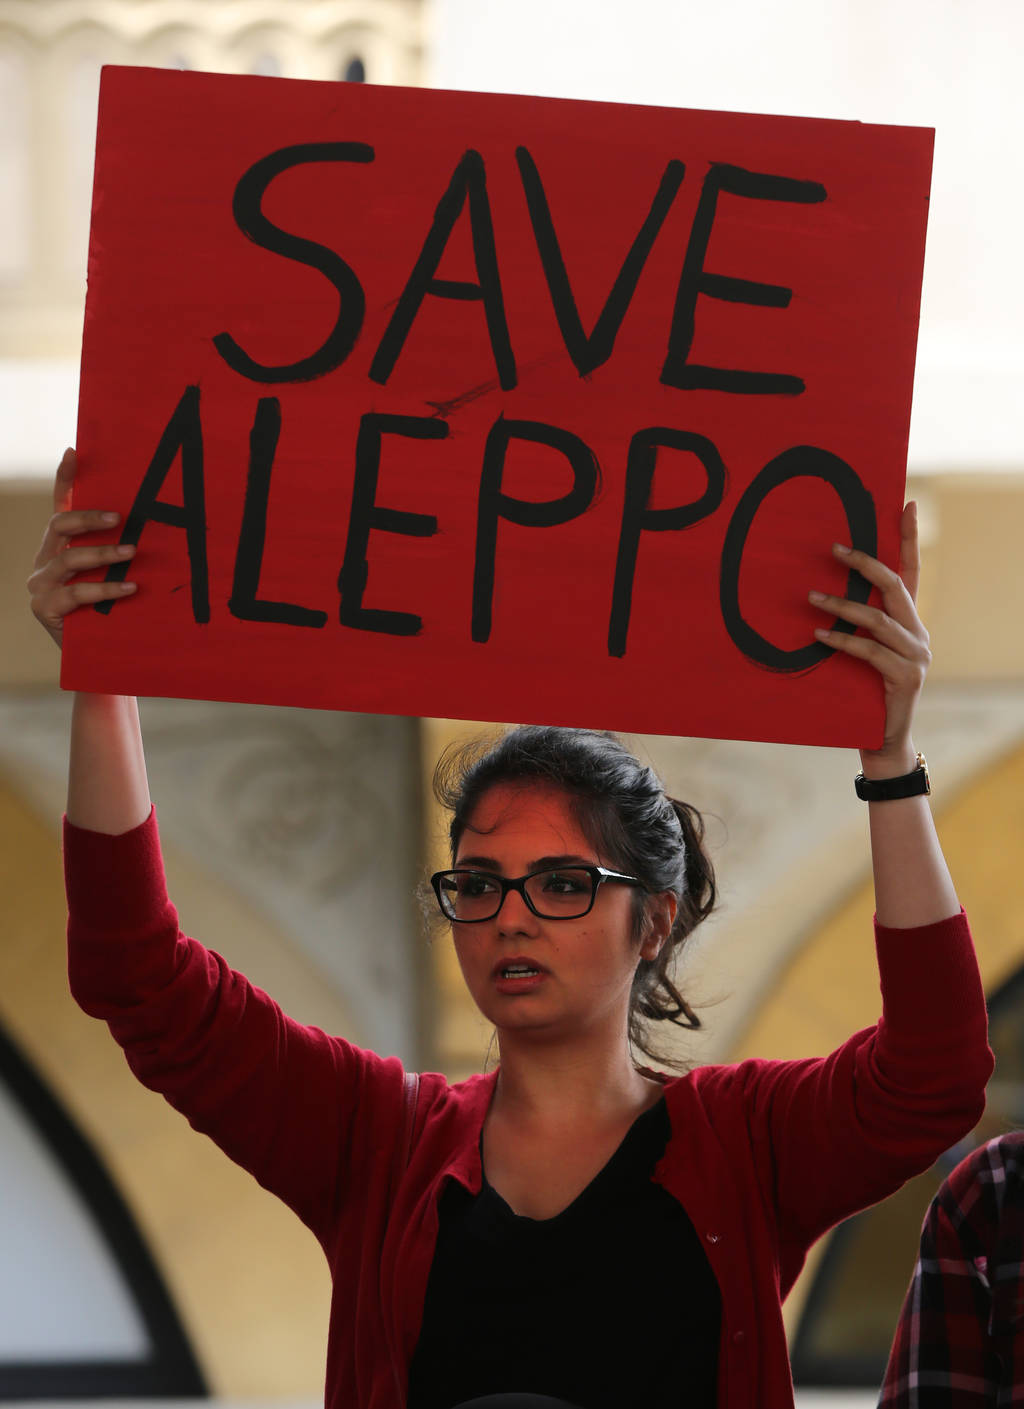 Apoyo. En el mundo, personas piden la ayuda para Alepo.